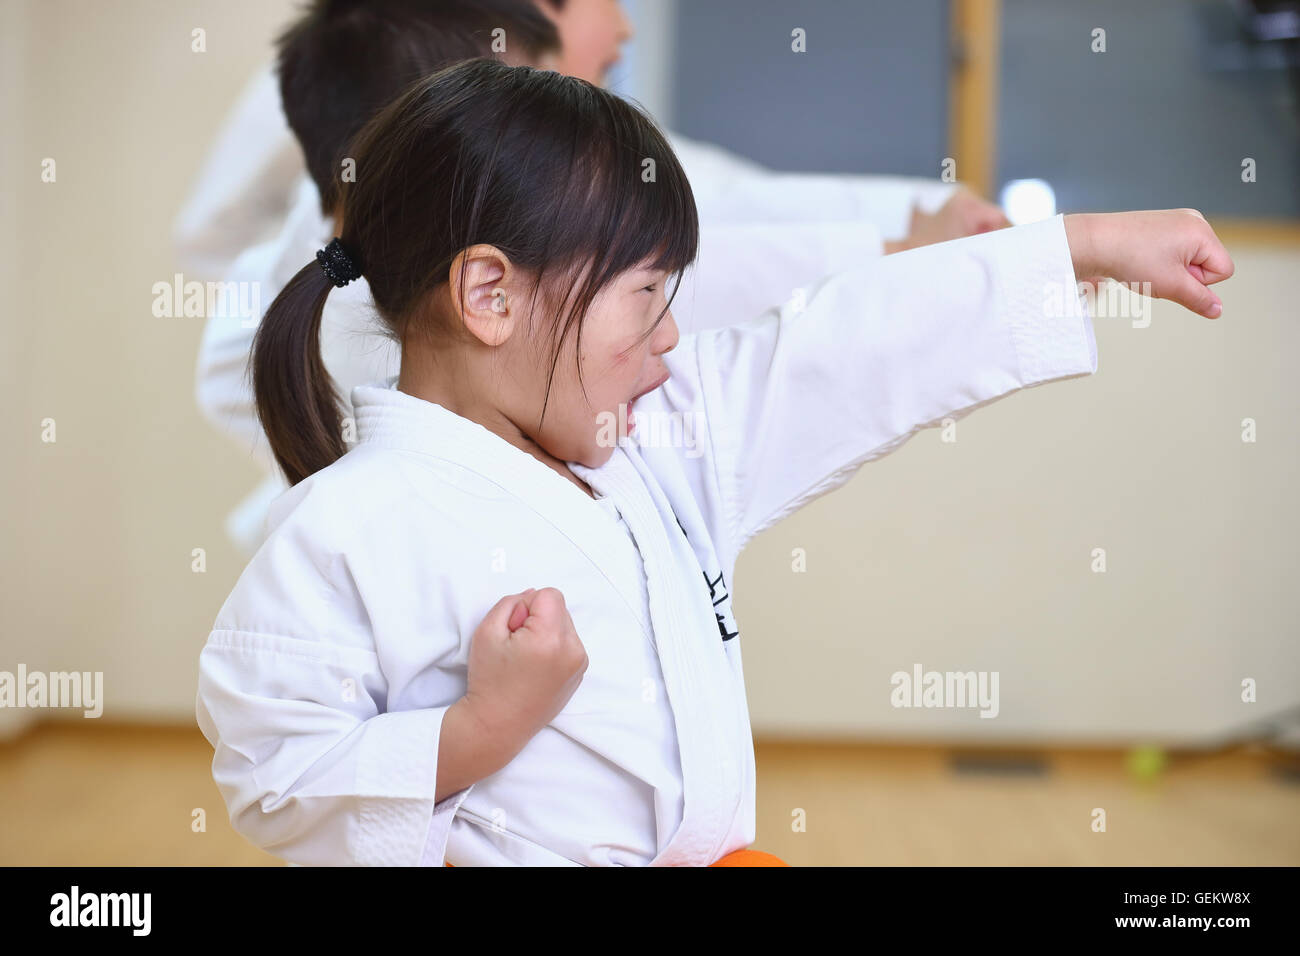 Japanische Kinder Karate-Klasse Stockfoto